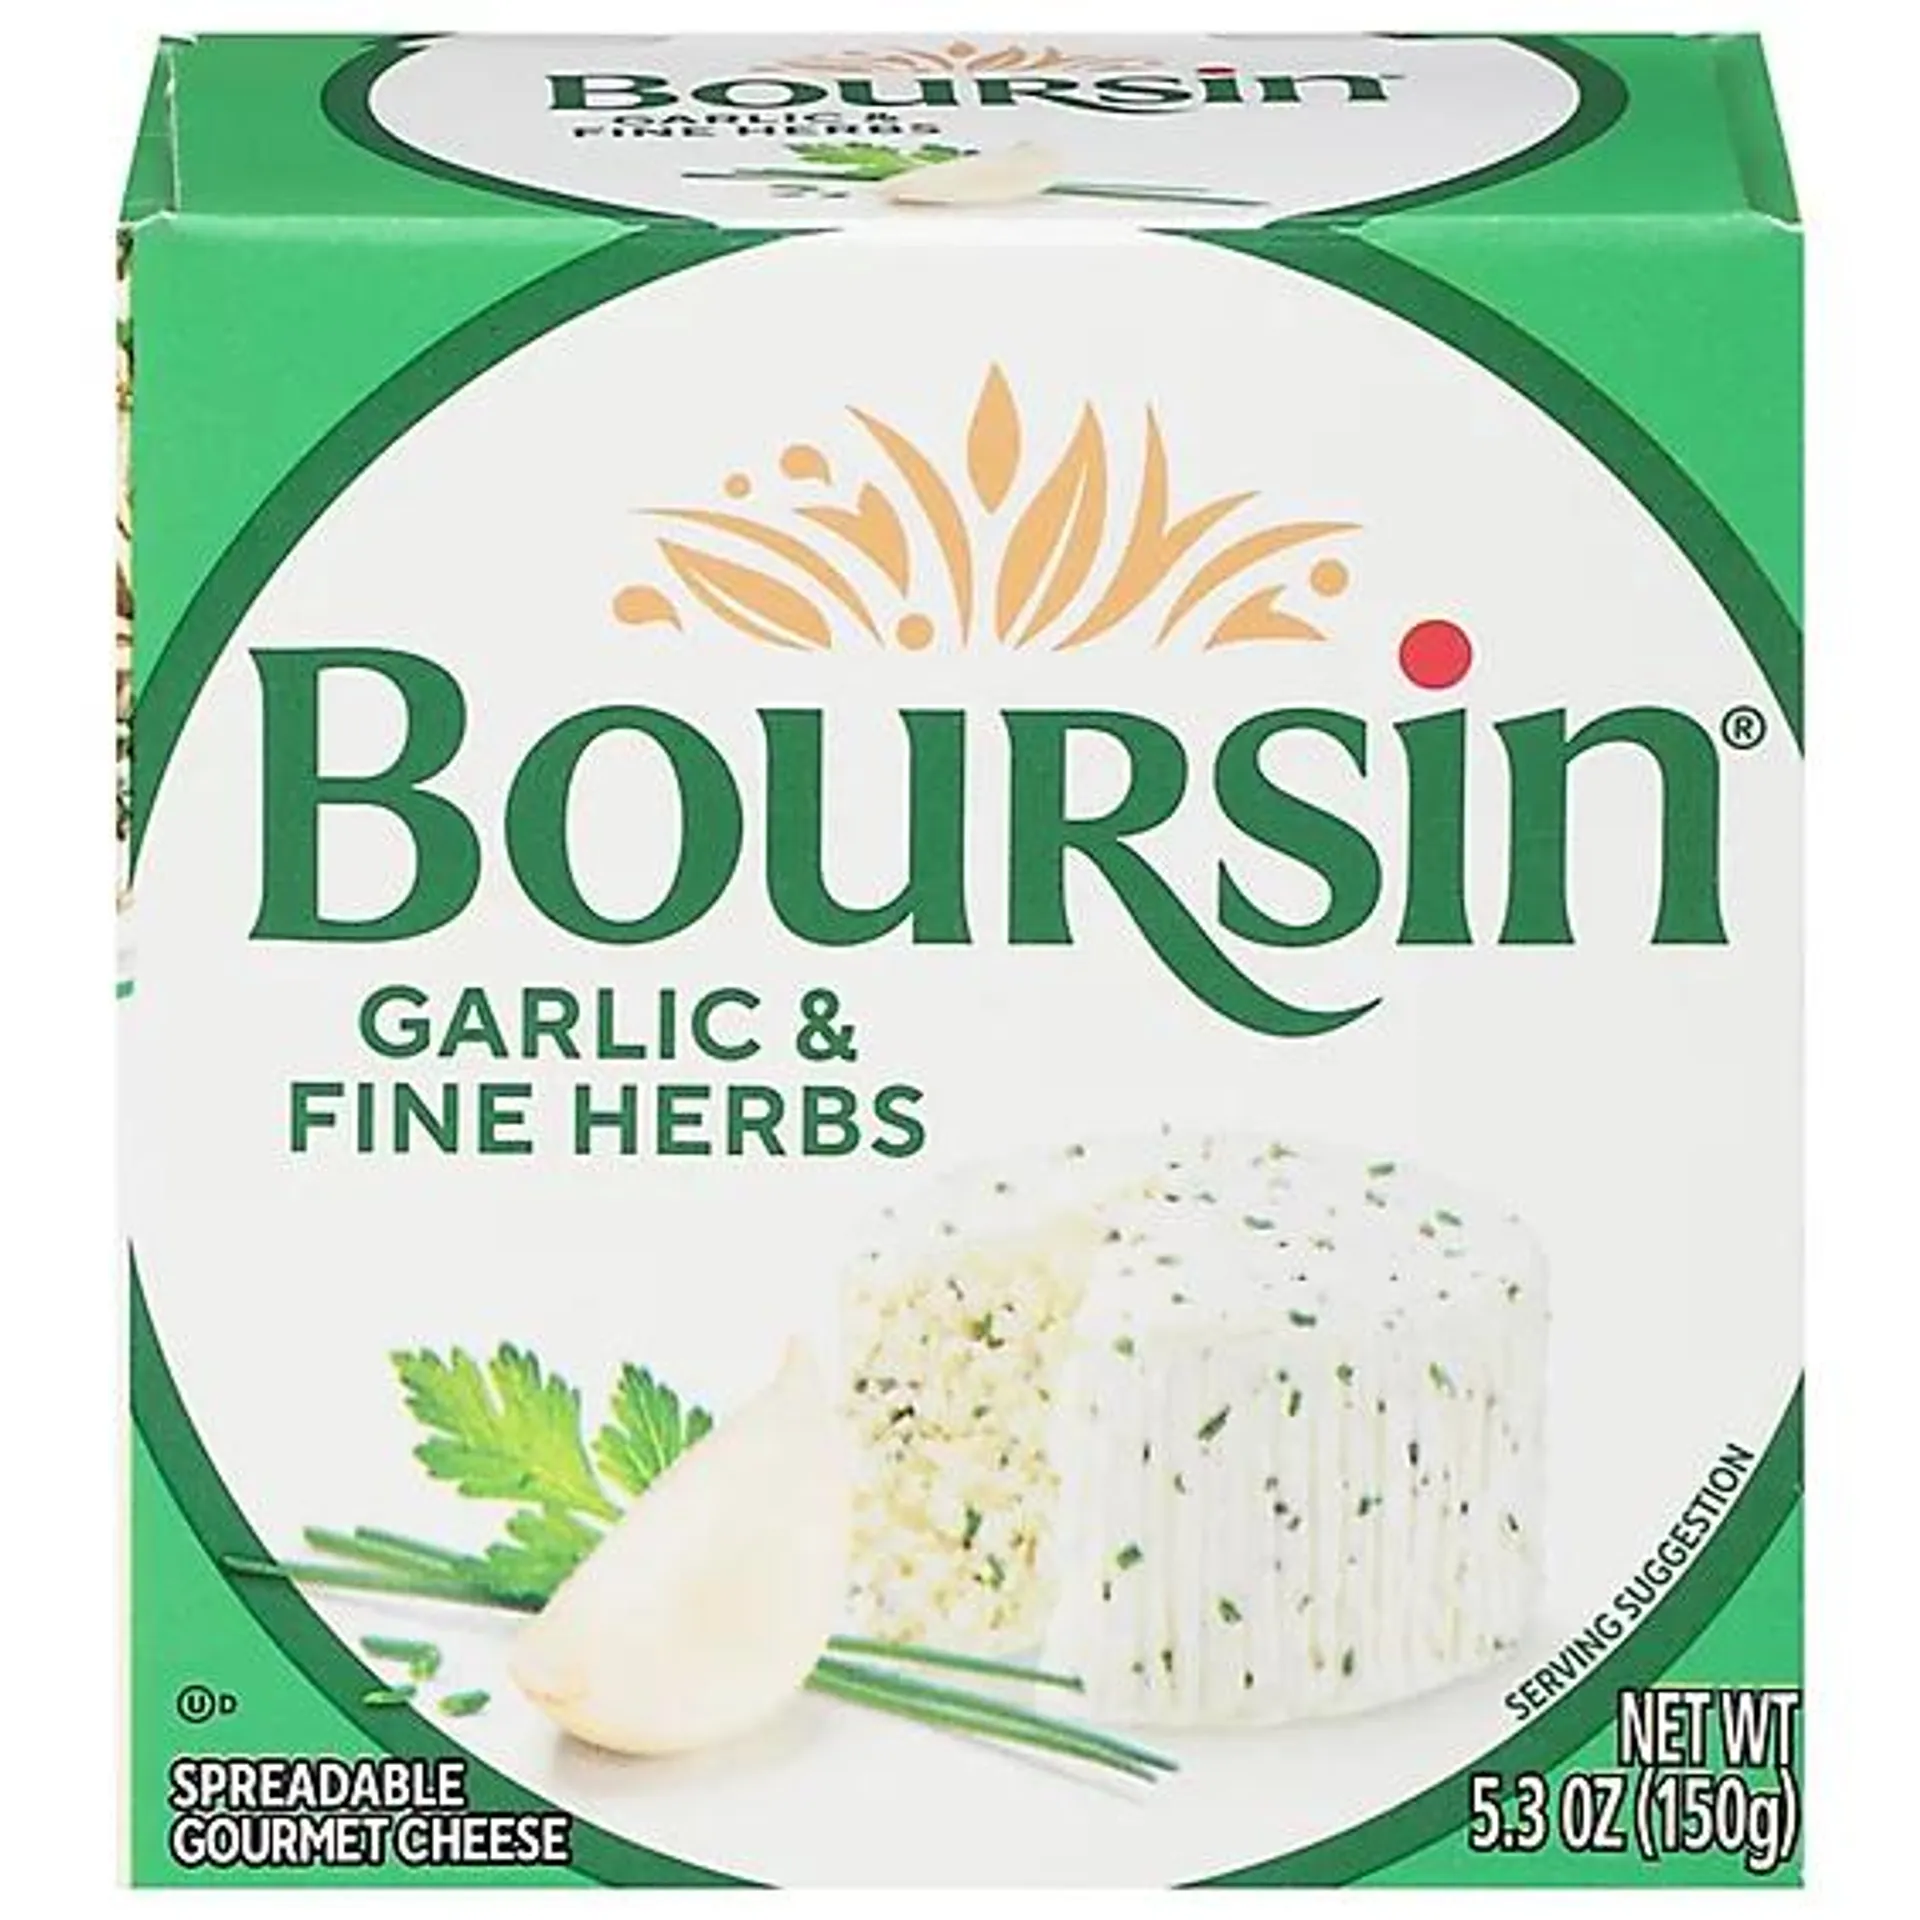 Boursin Garlic & Fine Herbs Gournay Cheese - 5.2 Oz